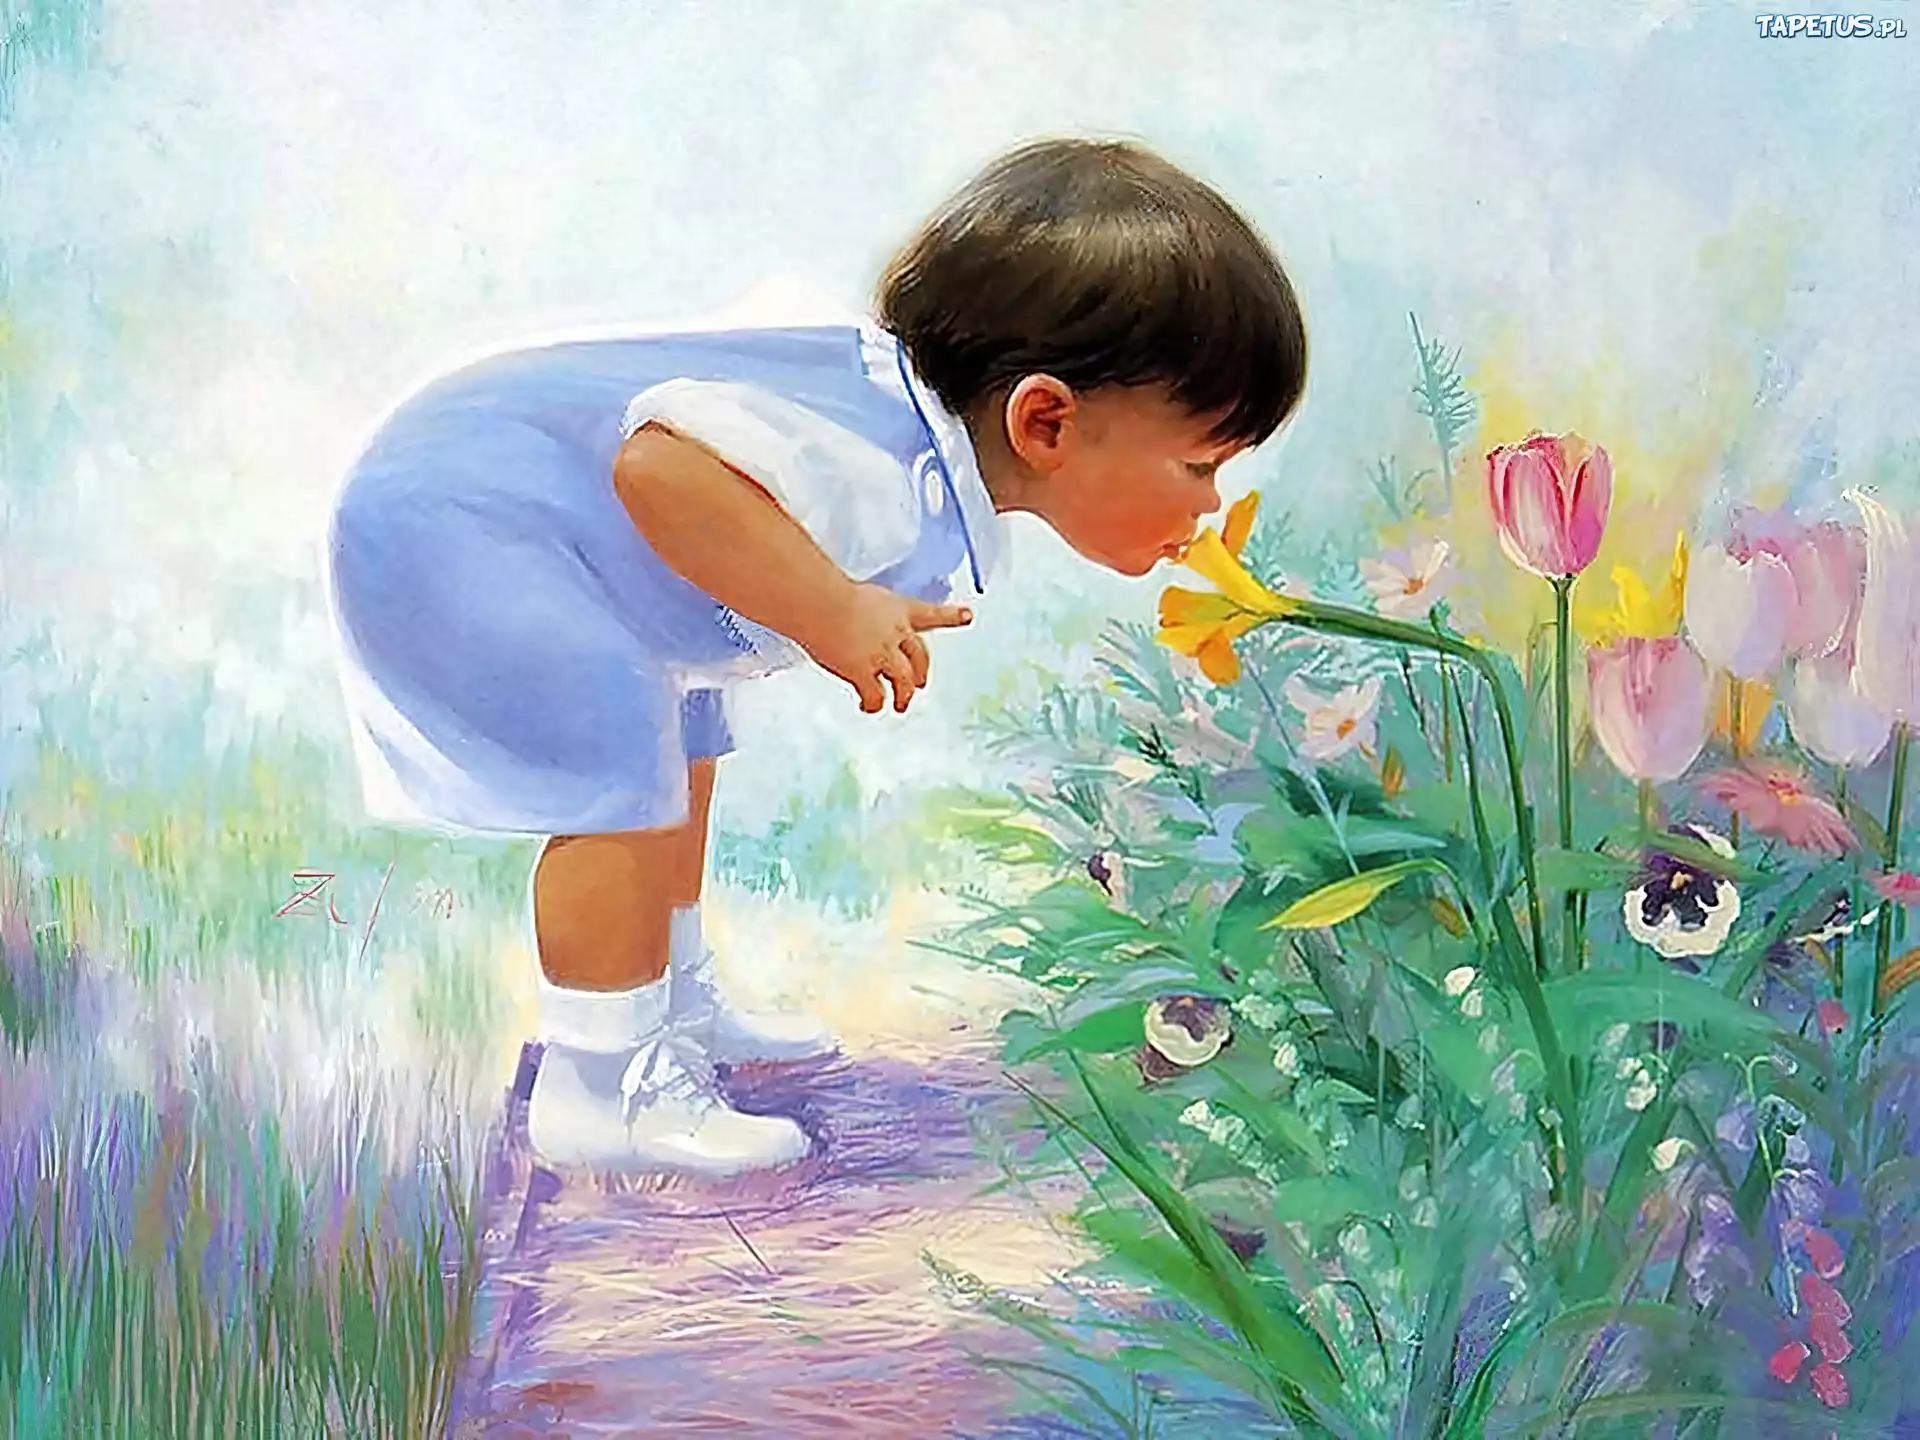 Красиво о детстве. Картины Дональда Золана беззаботное детство.